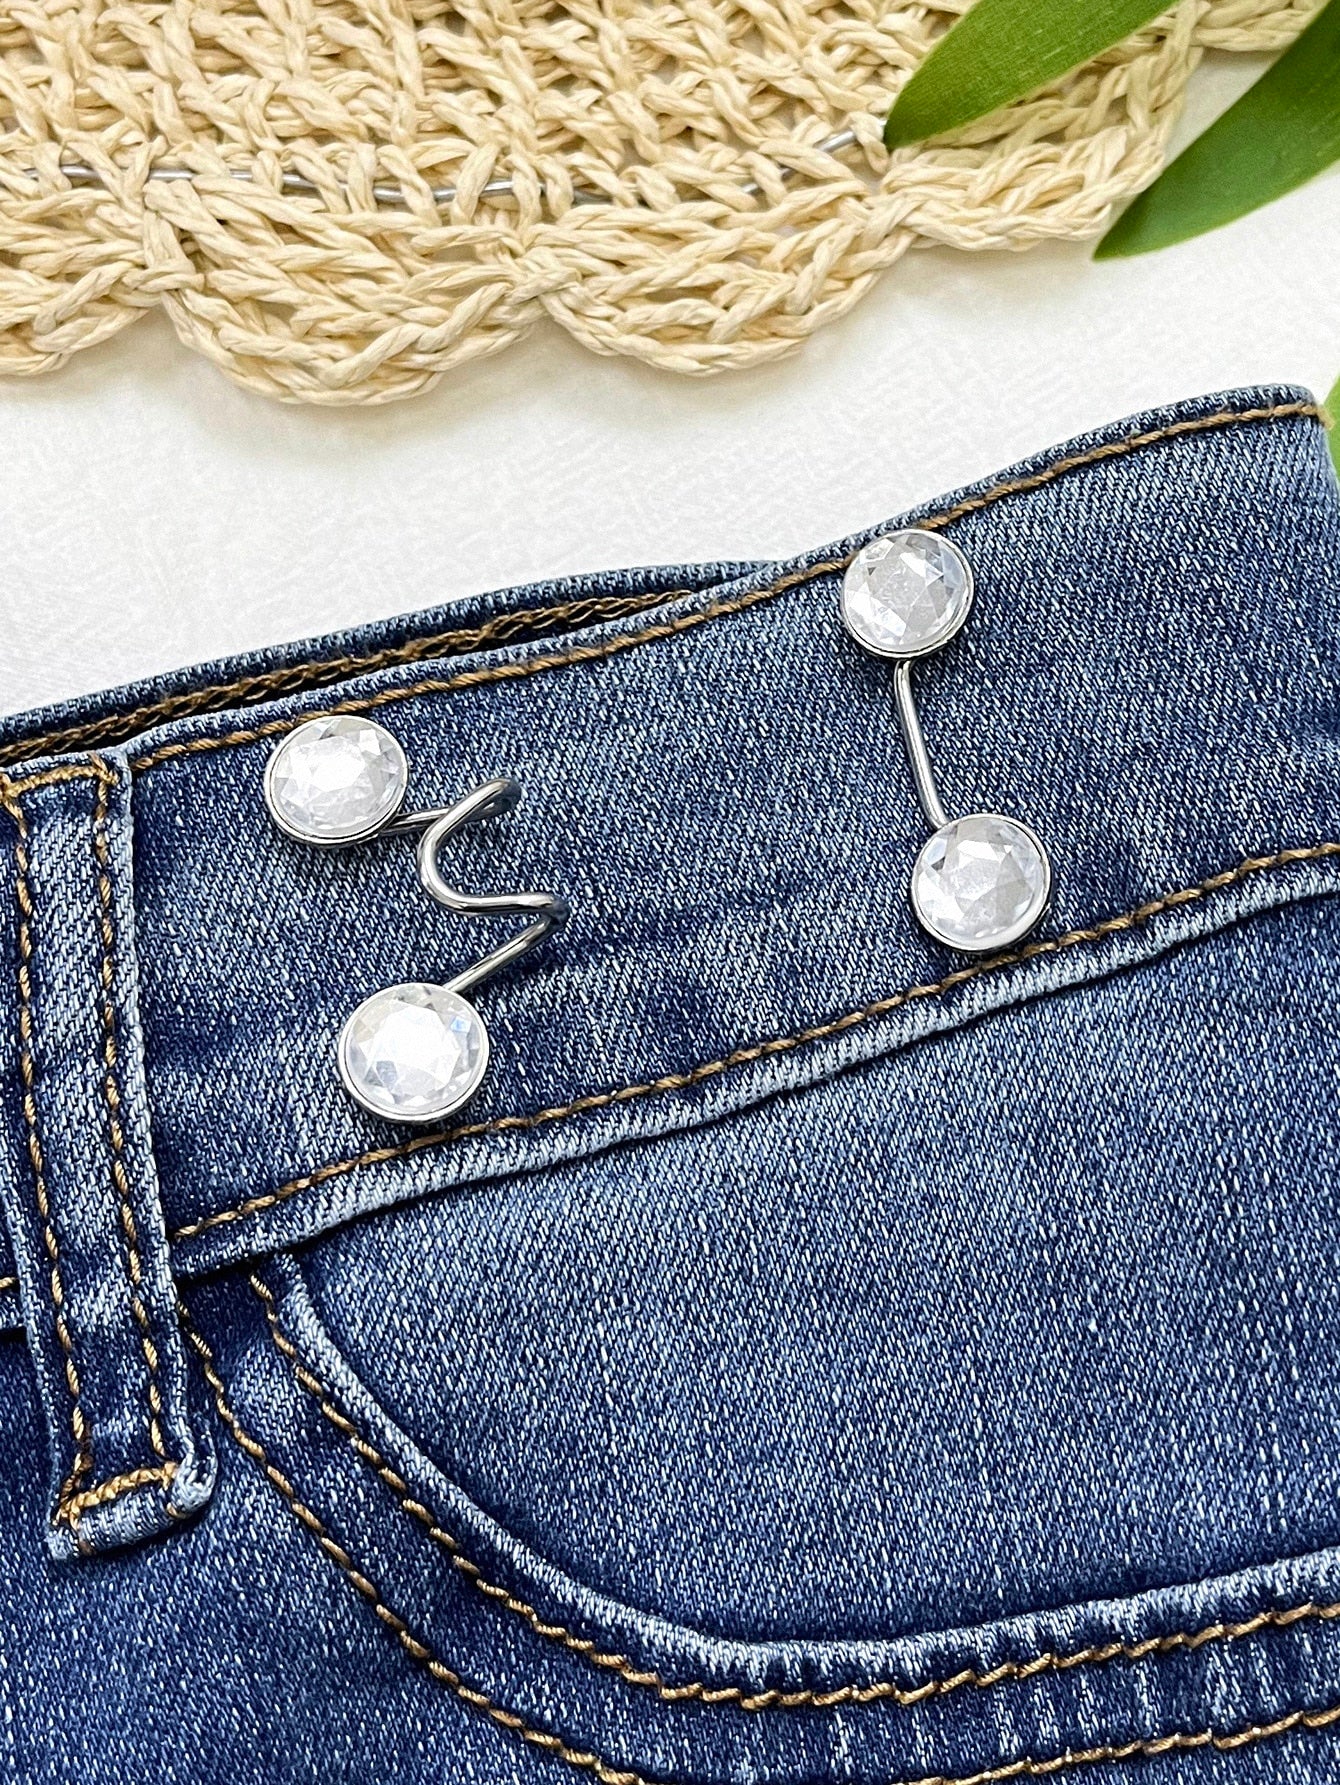 6pcs/set Detachable Iron Alloy Waist Button, Rhinestone Decor Adjustable Jeans Button For Home